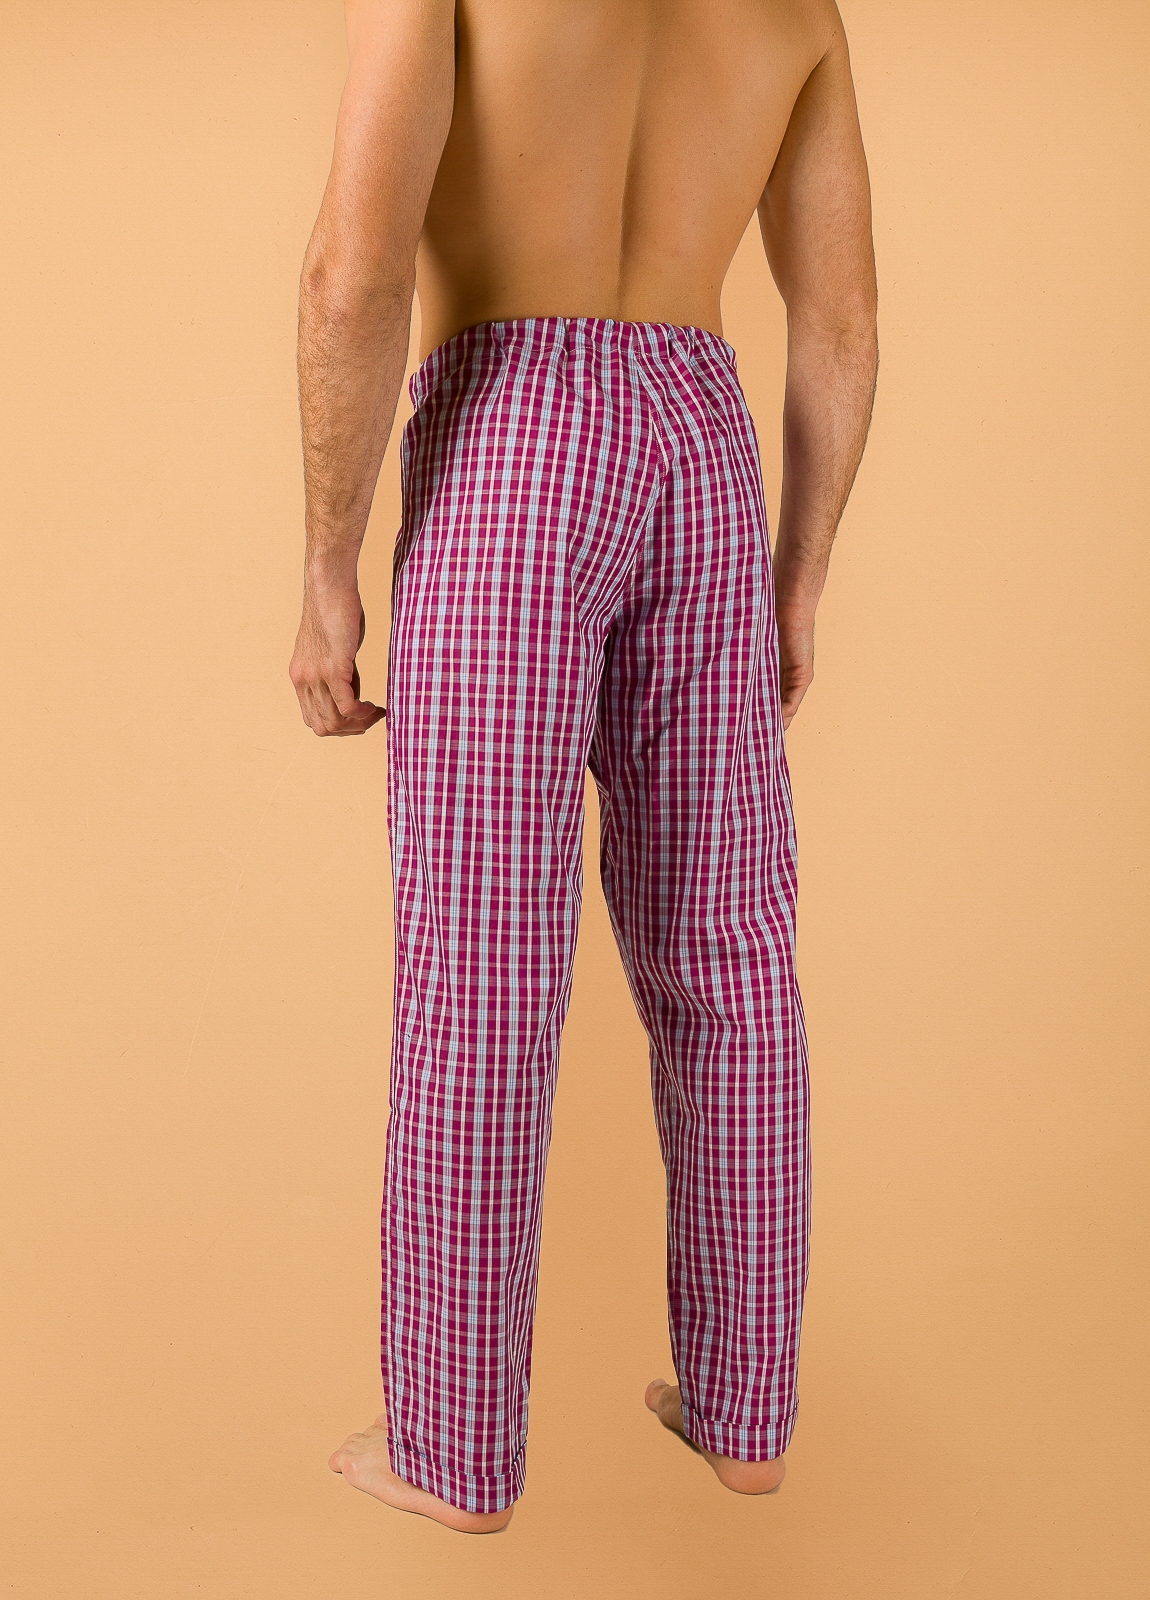 Pantalón largo de Pijama FUREST COLECCIÓN cuadros granate con funda incluida - Ítem2